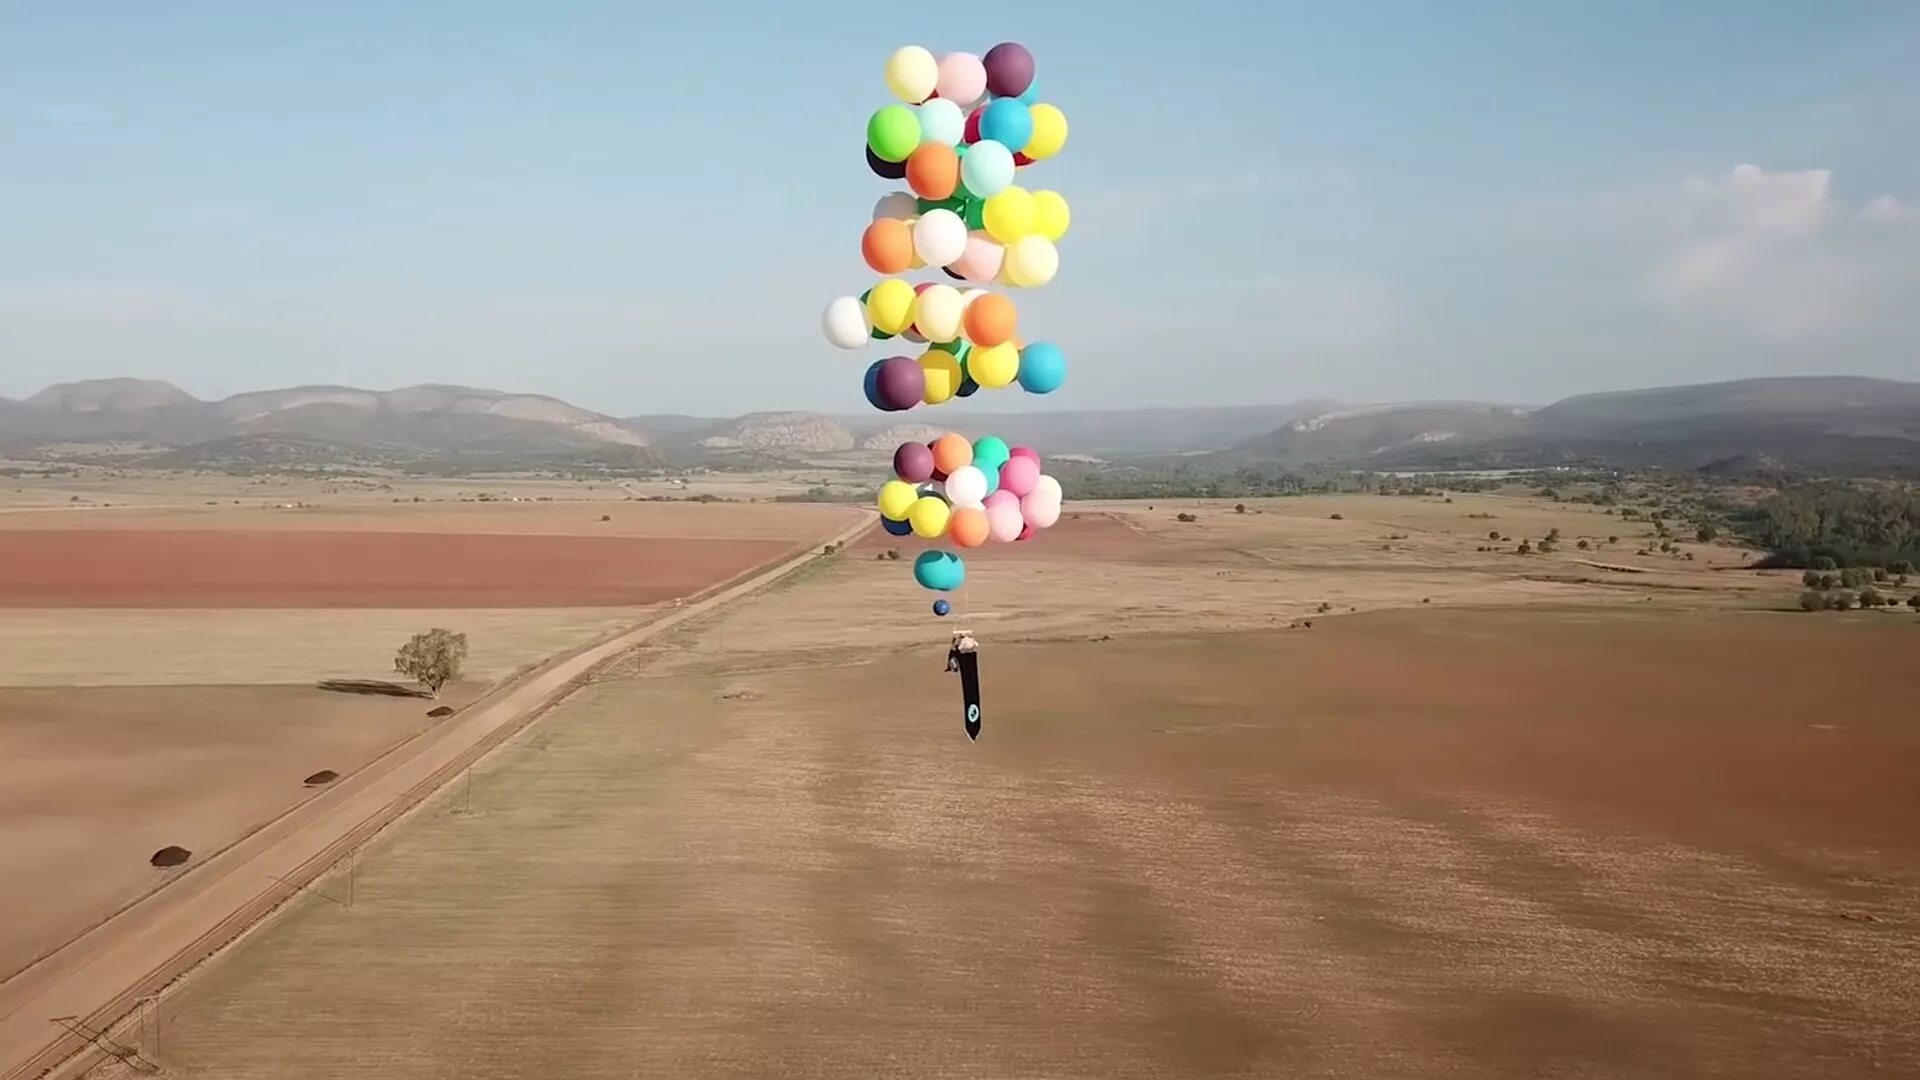 Гонка на воздушных шарах. Полёт на воздушных шариках. Полёт на возлушных шариках. Человек с воздушным шариком. Воздушные шары взлетают.